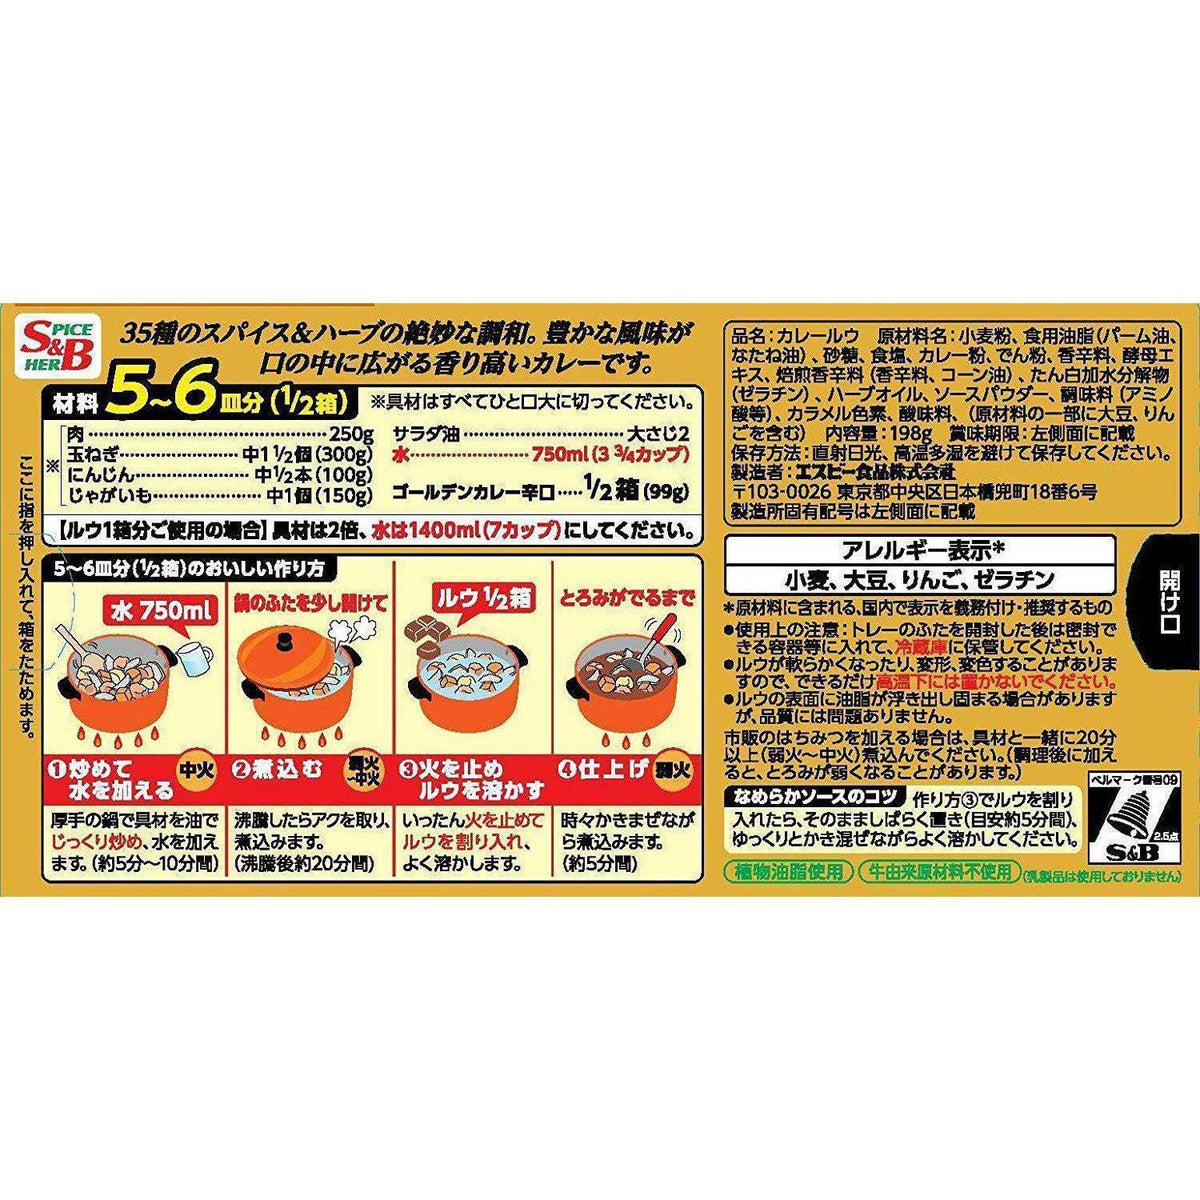 Curry japonais Golden Curry doux 220g S&B